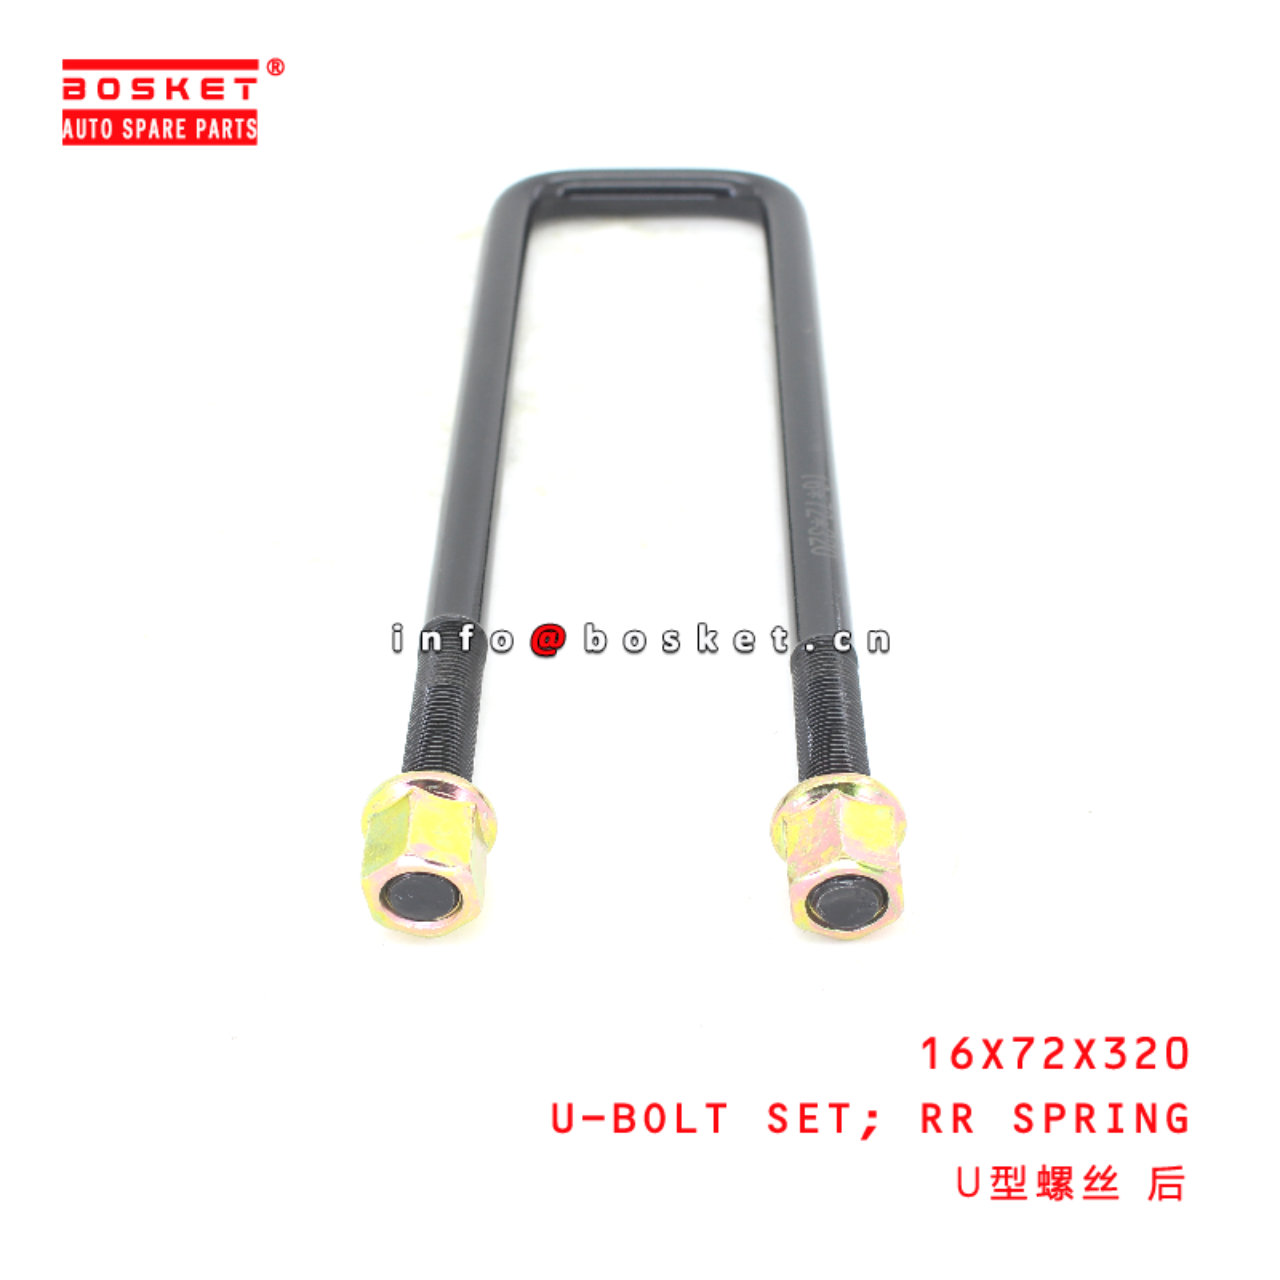 16X72X320 Rear Spring U-Bolt Set suitable for ISUZU HD72 NMR85  16X72X320